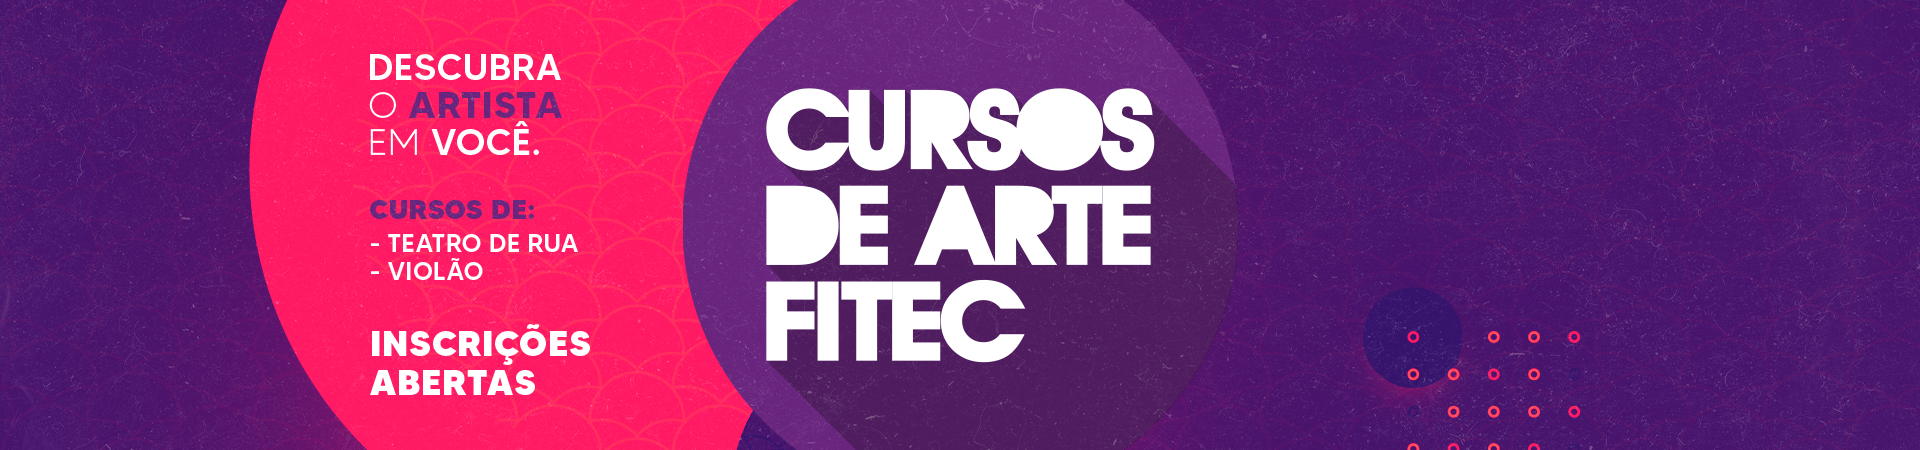 site_fitec_cursos